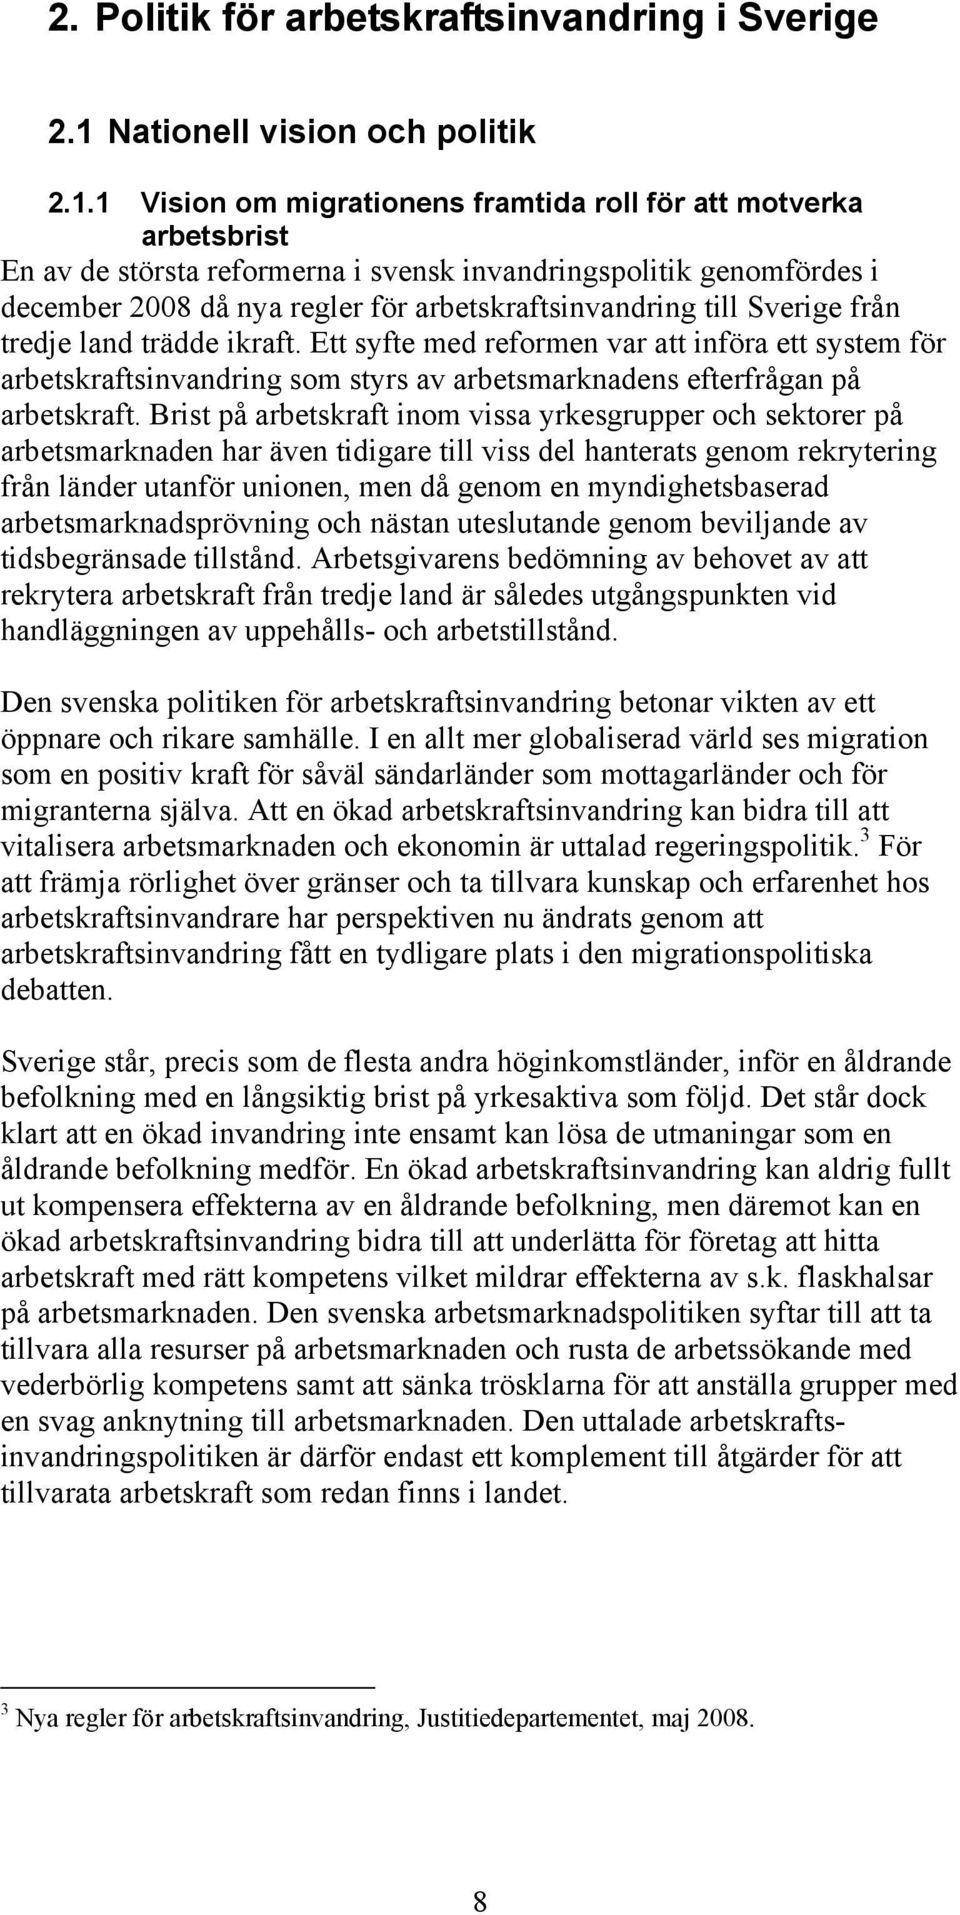 1 Vision om migrationens framtida roll för att motverka arbetsbrist En av de största reformerna i svensk invandringspolitik genomfördes i december 2008 då nya regler för arbetskraftsinvandring till